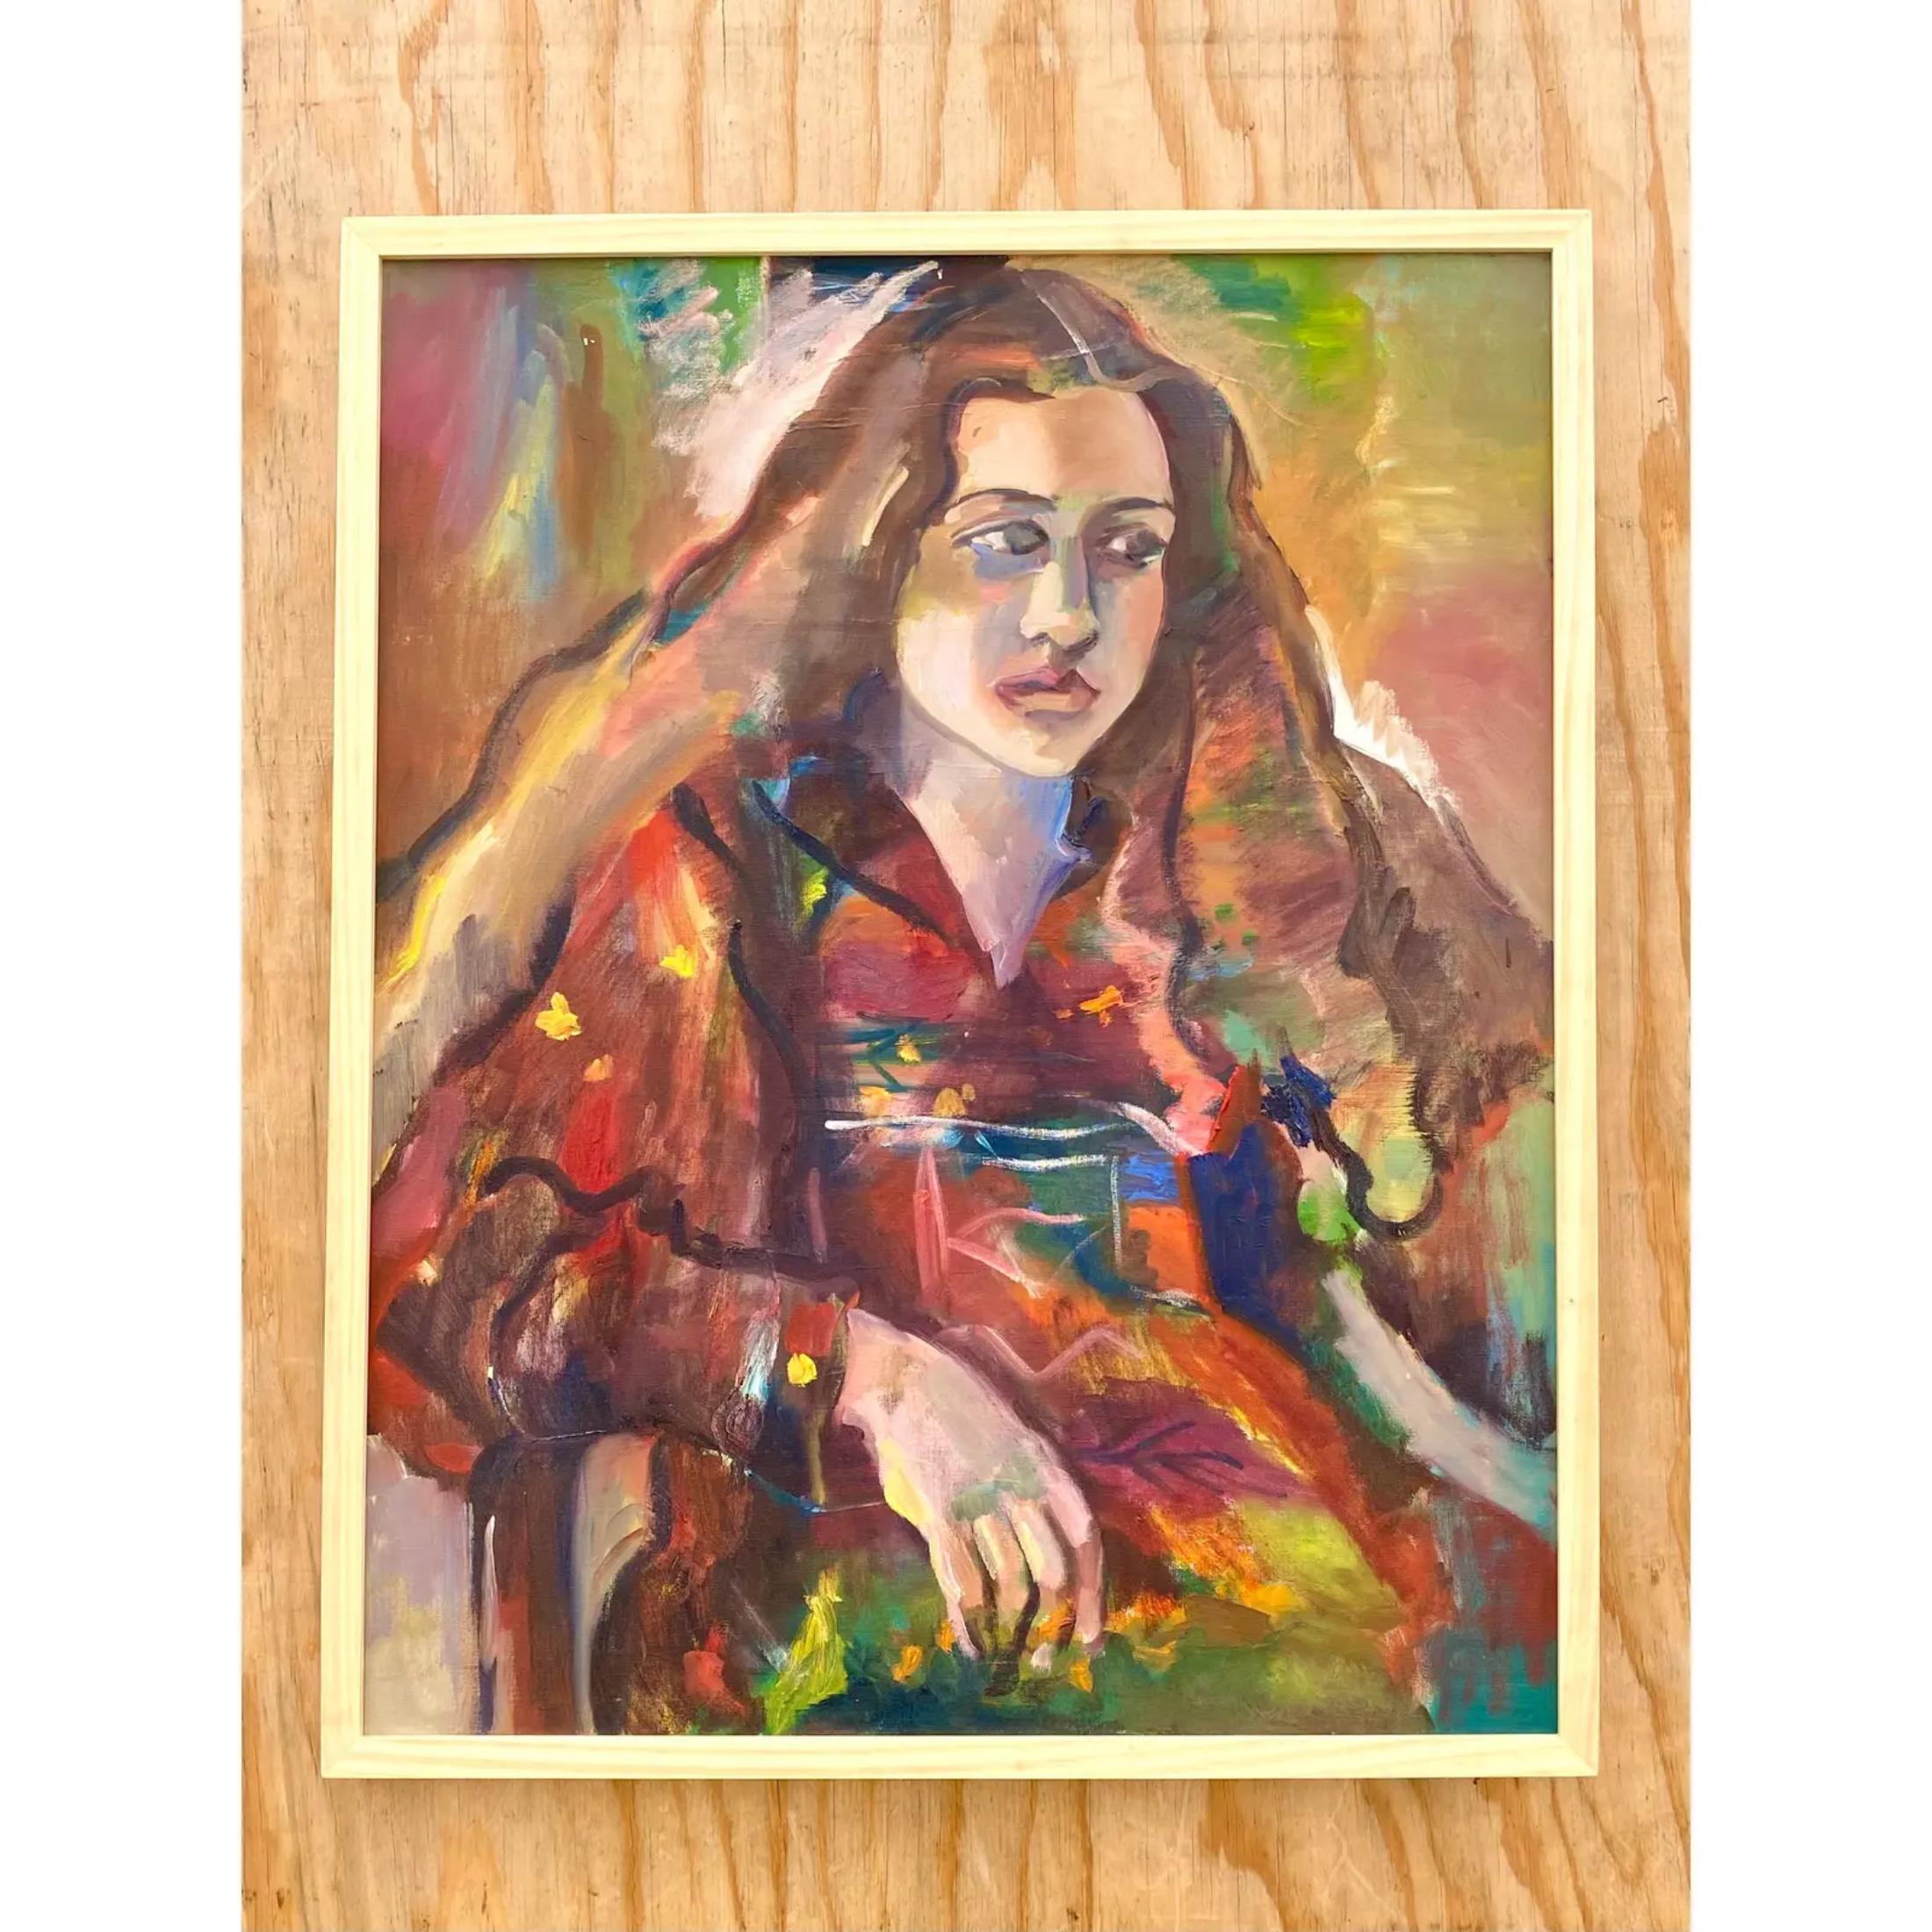 Fantastique peinture à l'huile Boho vintage. Une belle composition d'une jeune femme aux cheveux longs. Brillantes touches picturales avec des couleurs riches et profondes. Acquis d'une propriété de Palm Beach.